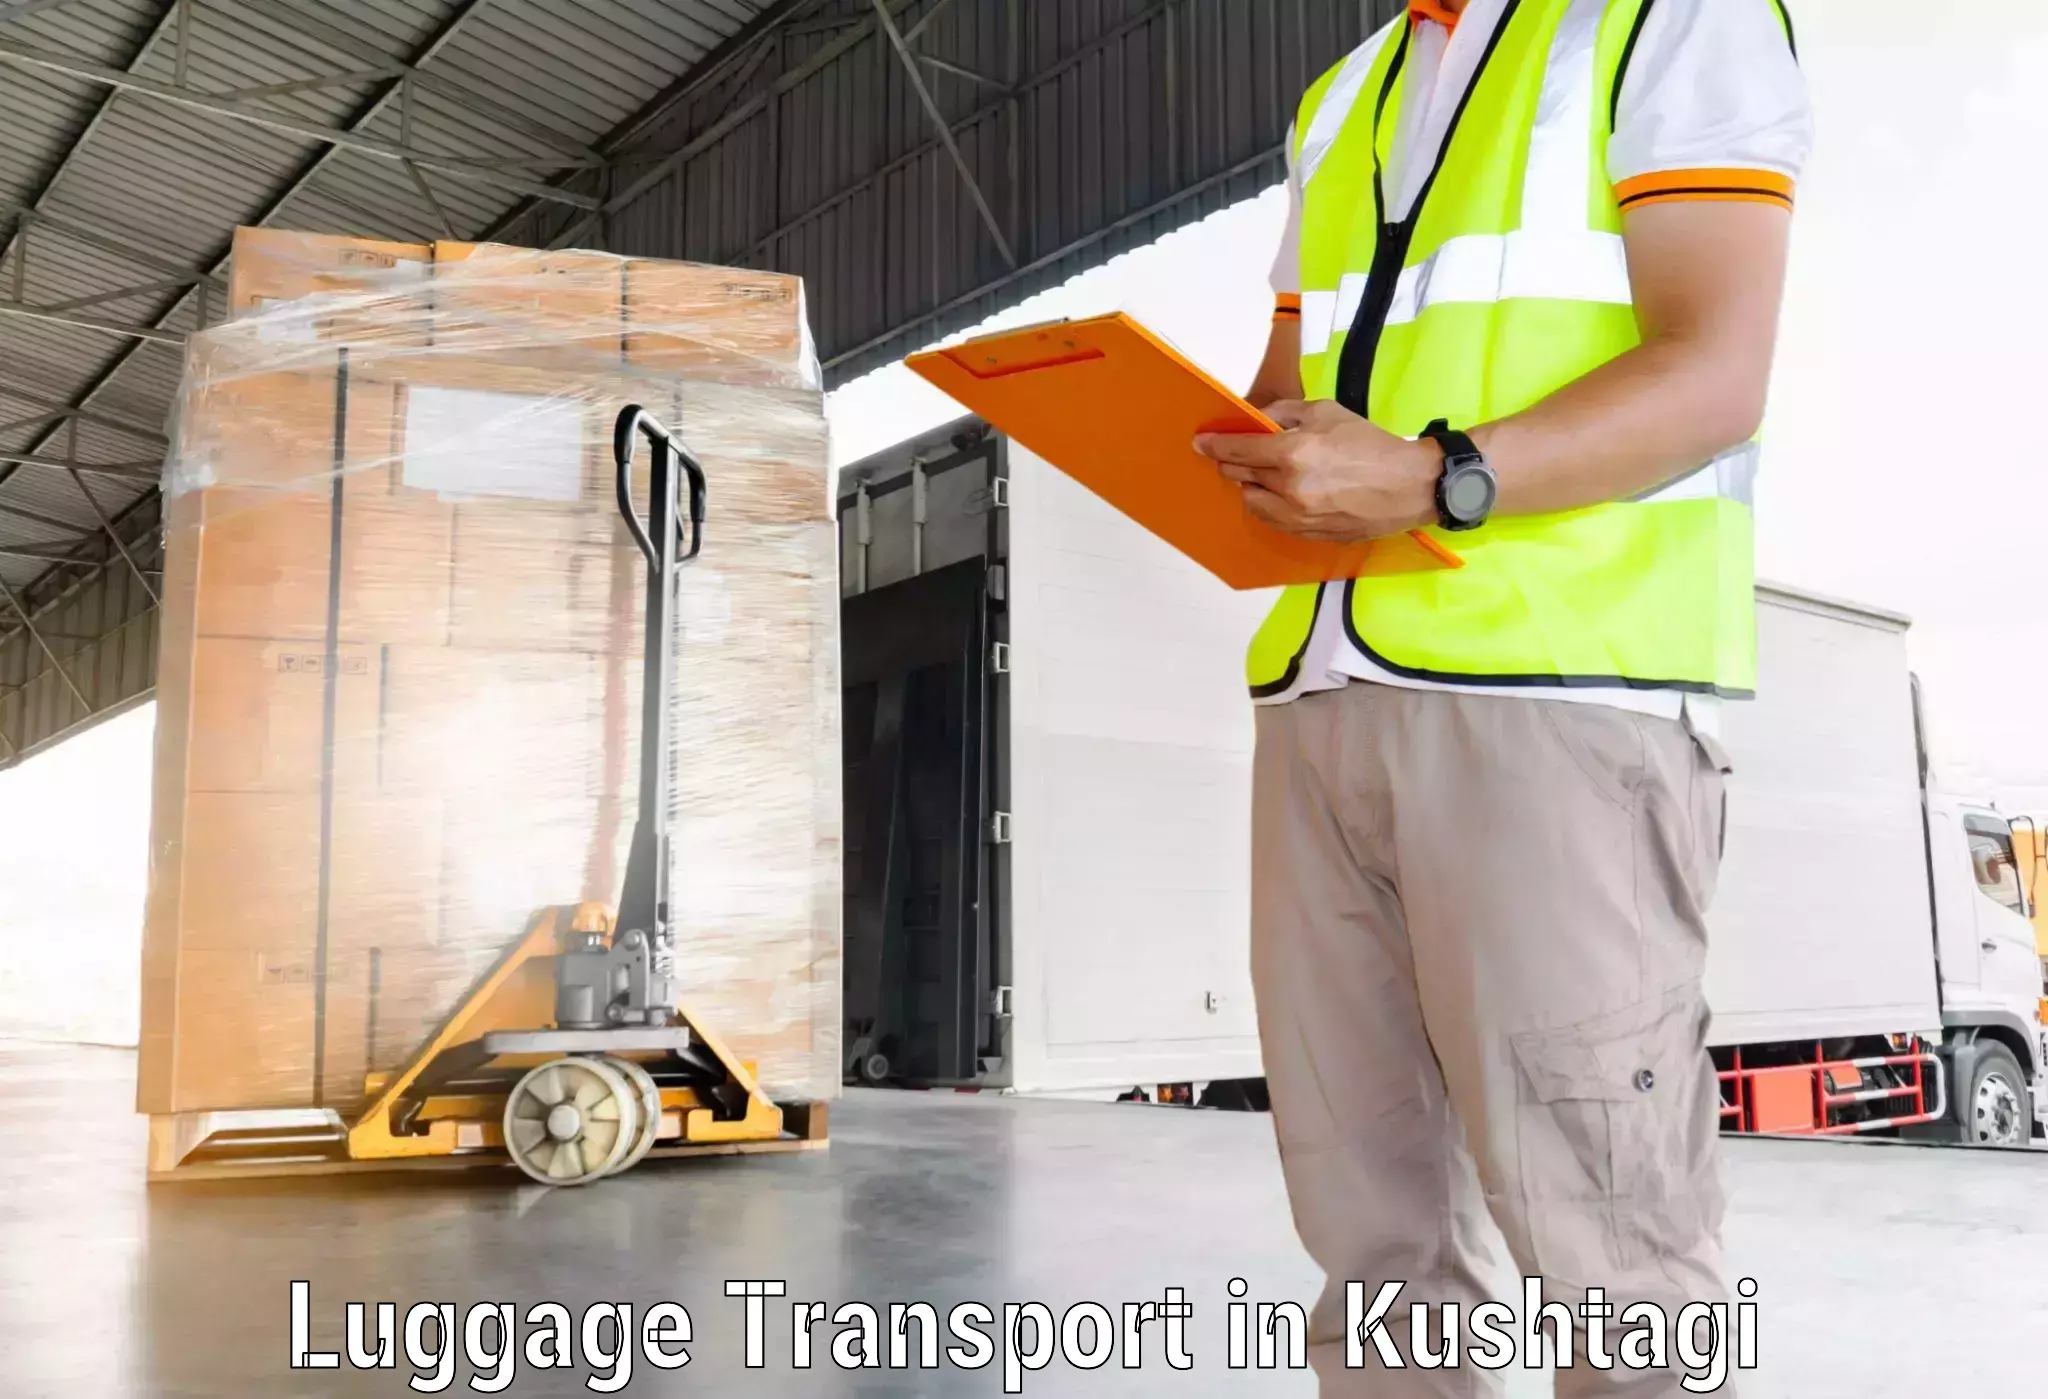 Luggage shipment tracking in Kushtagi